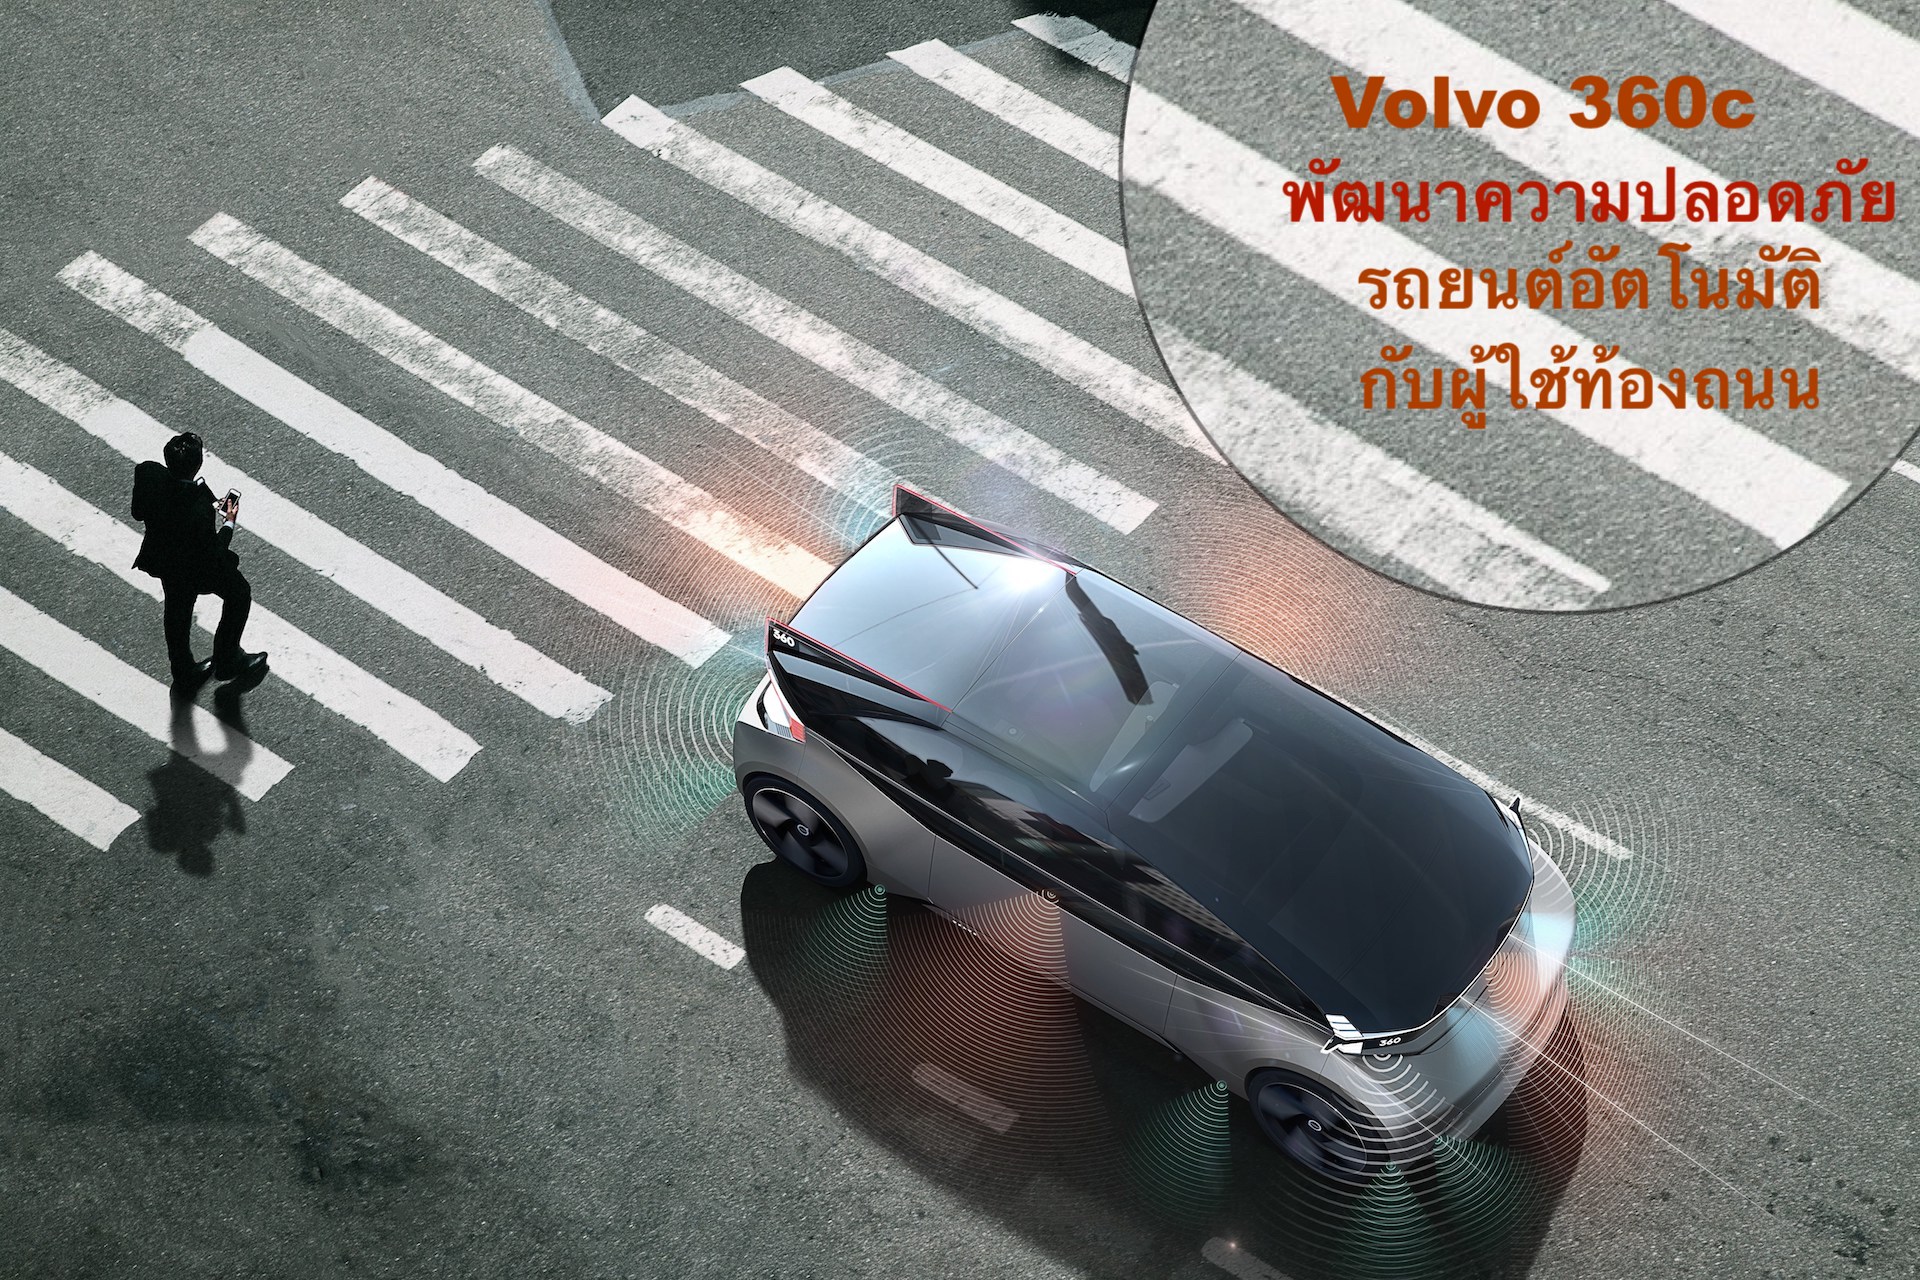 การพัฒนา Volvo 360c เพื่อนำสู่มาตรฐานสากลในรูปแบบใหม่ด้านความปลอดภัยในการสื่อสารของรถยนต์อัตโนมัติกับผู้ใช้ท้องถนน